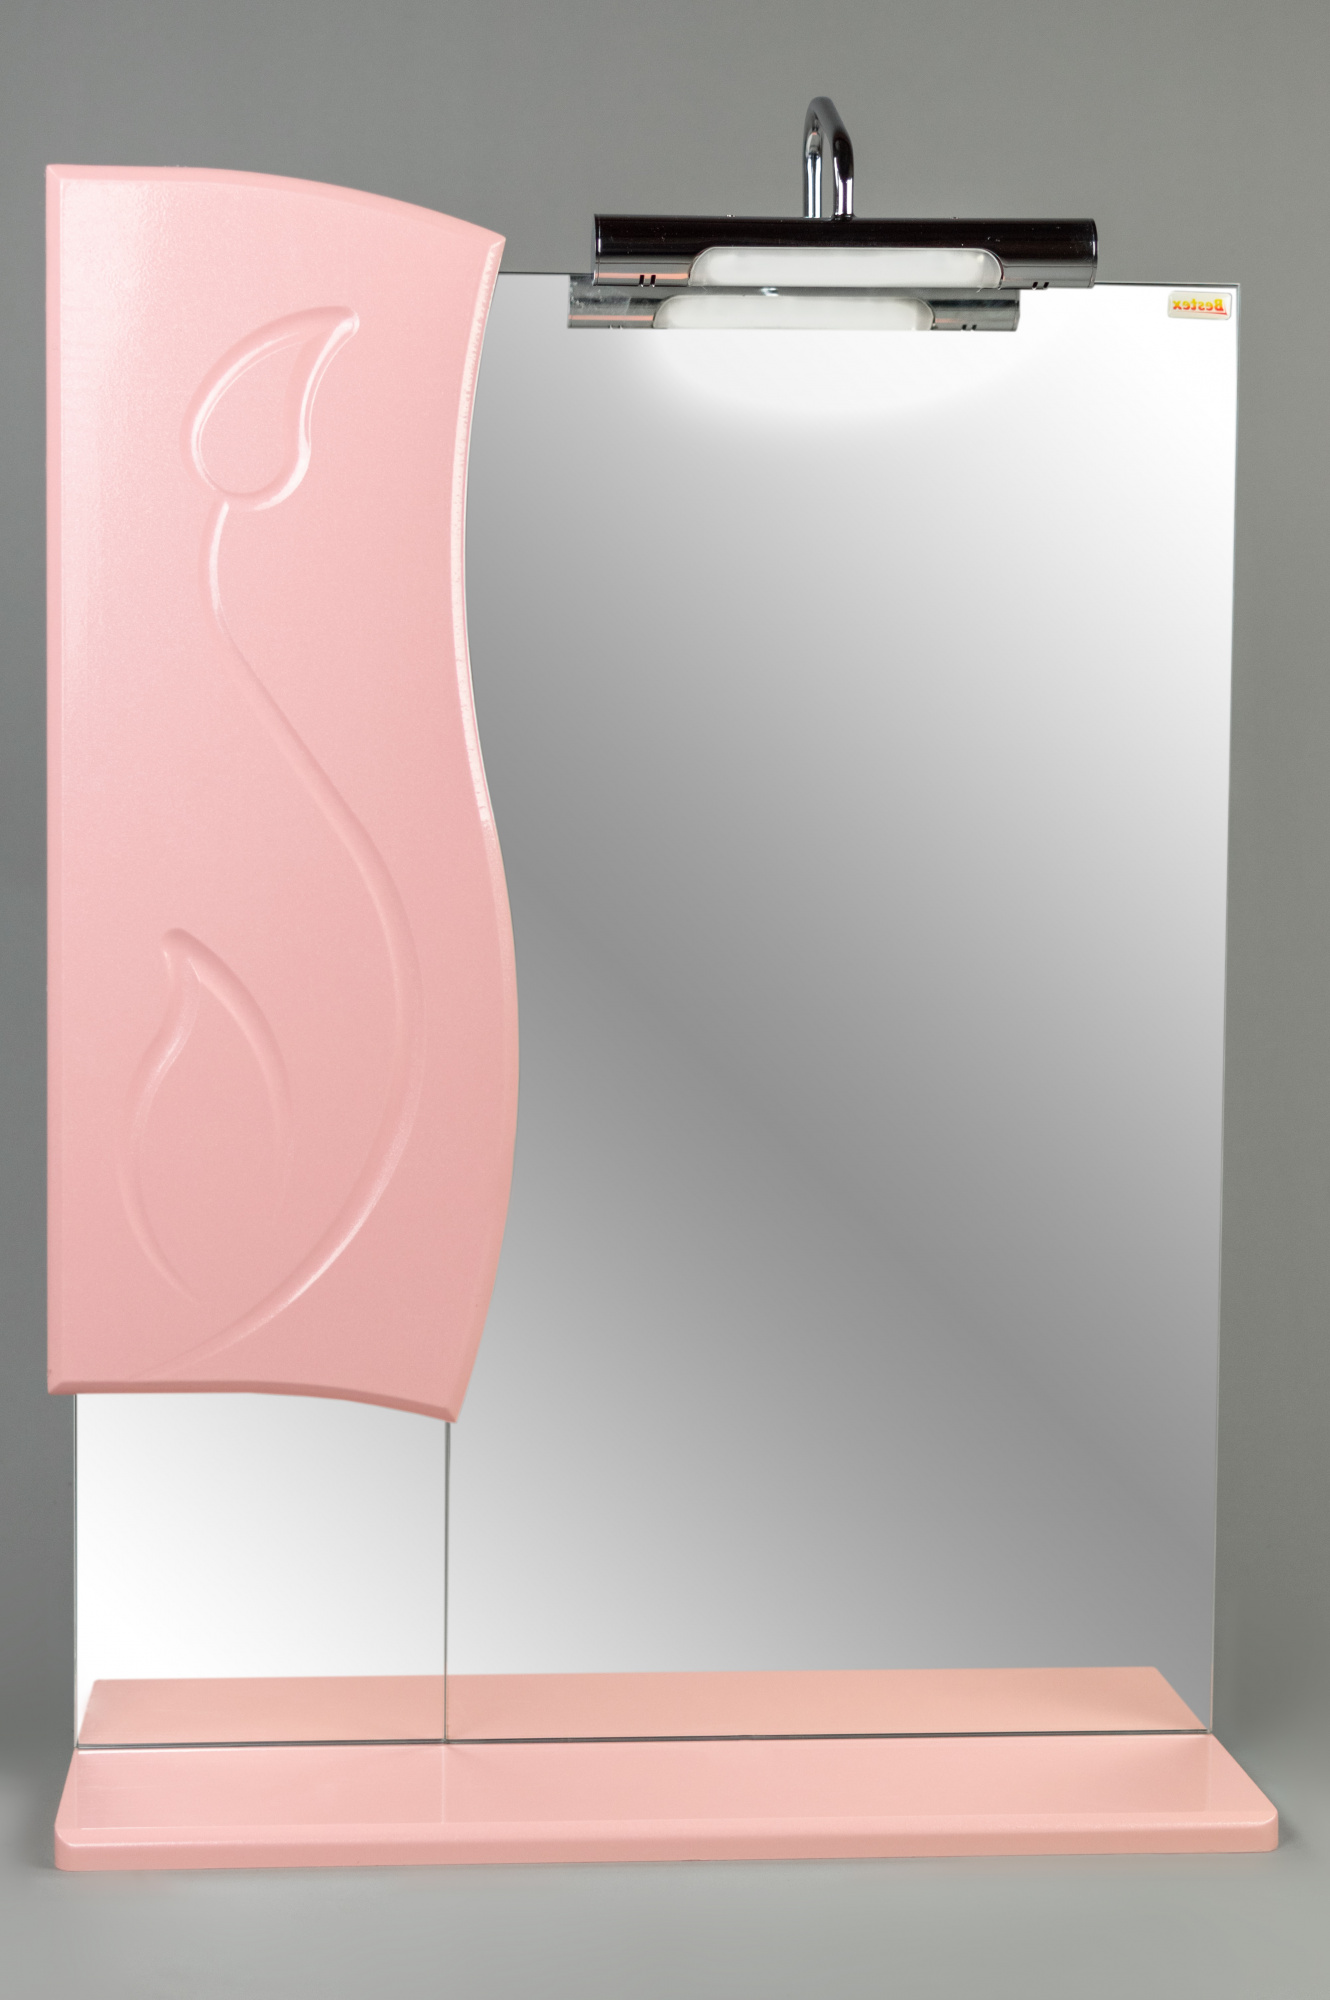 Зеркало 55 Флорина (левый) розовый металлик СВ, 3923c.34Lw